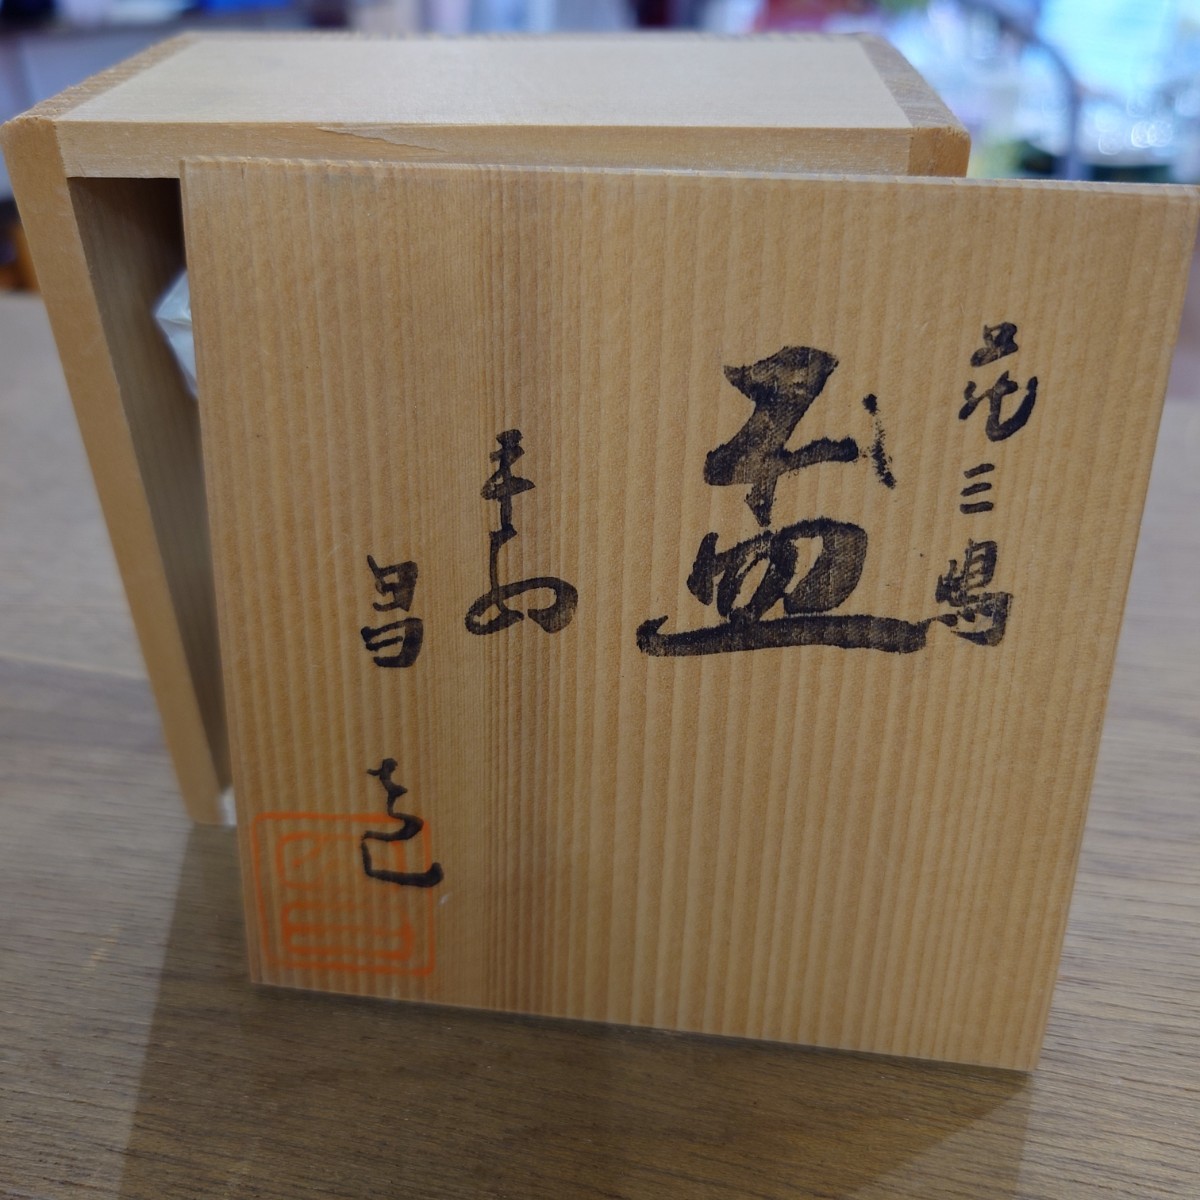 B11181139 не использовался Shimizu . flat дешево . чашечка для сакэ рюмка для сакэ .. посуда для сакэ вместе с ящиком 